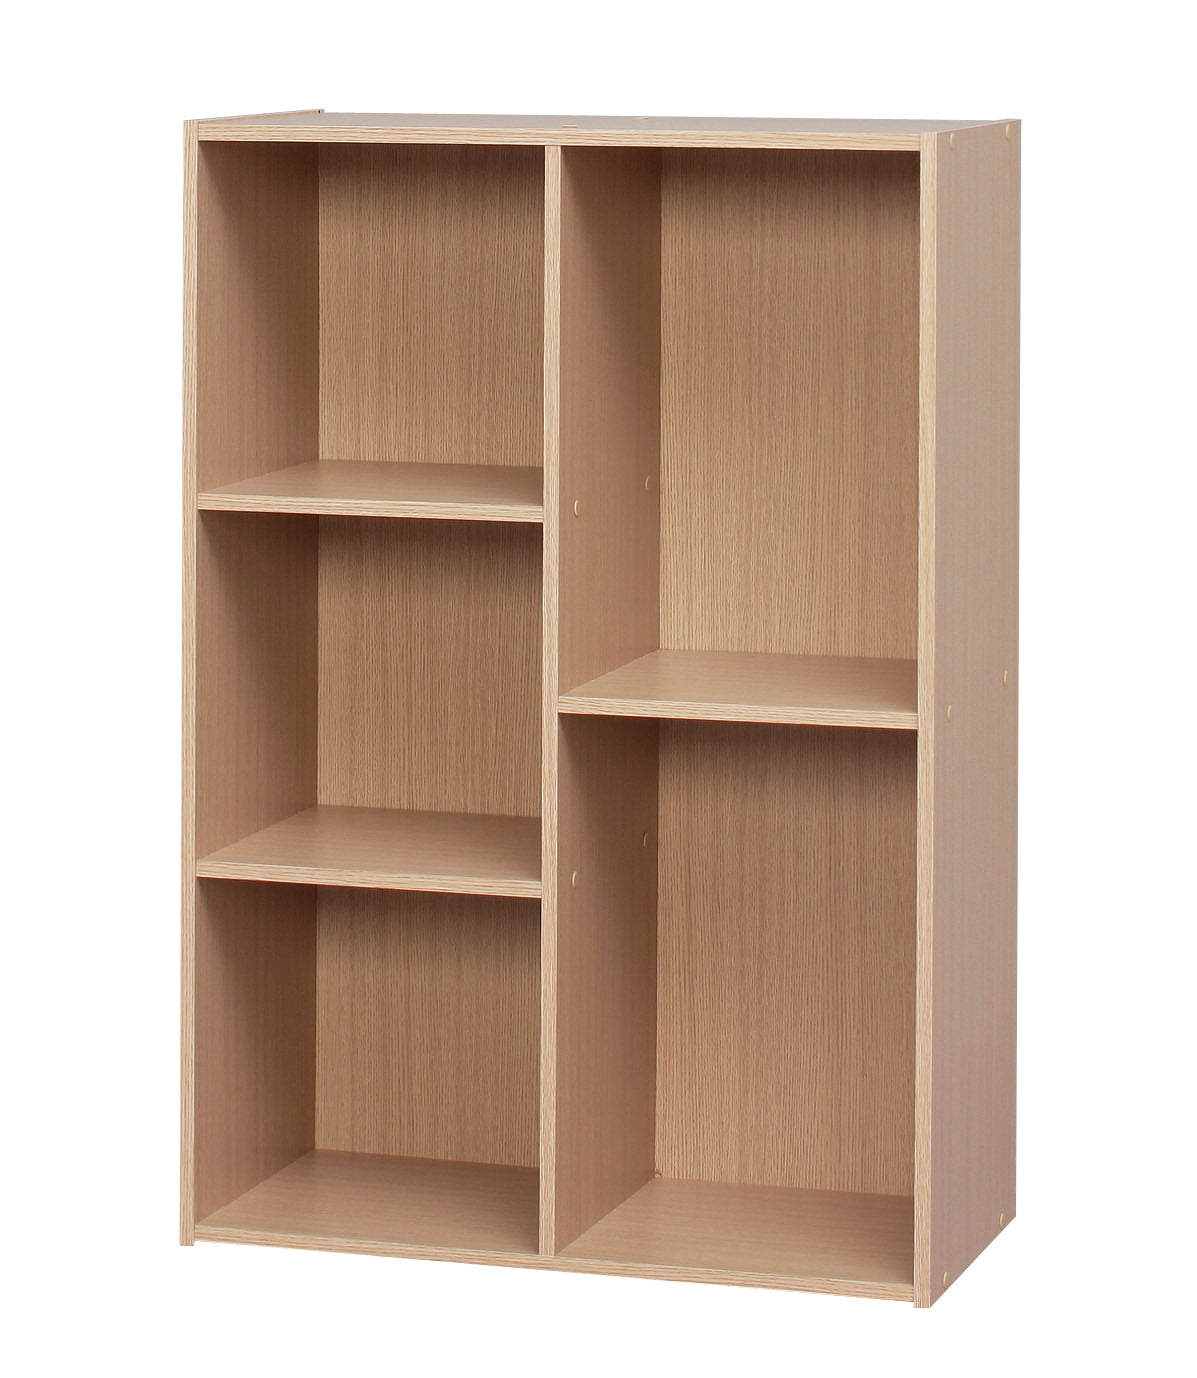 5-Compartment Wood Organizer Bookcase Storage Shelf, LightBrown